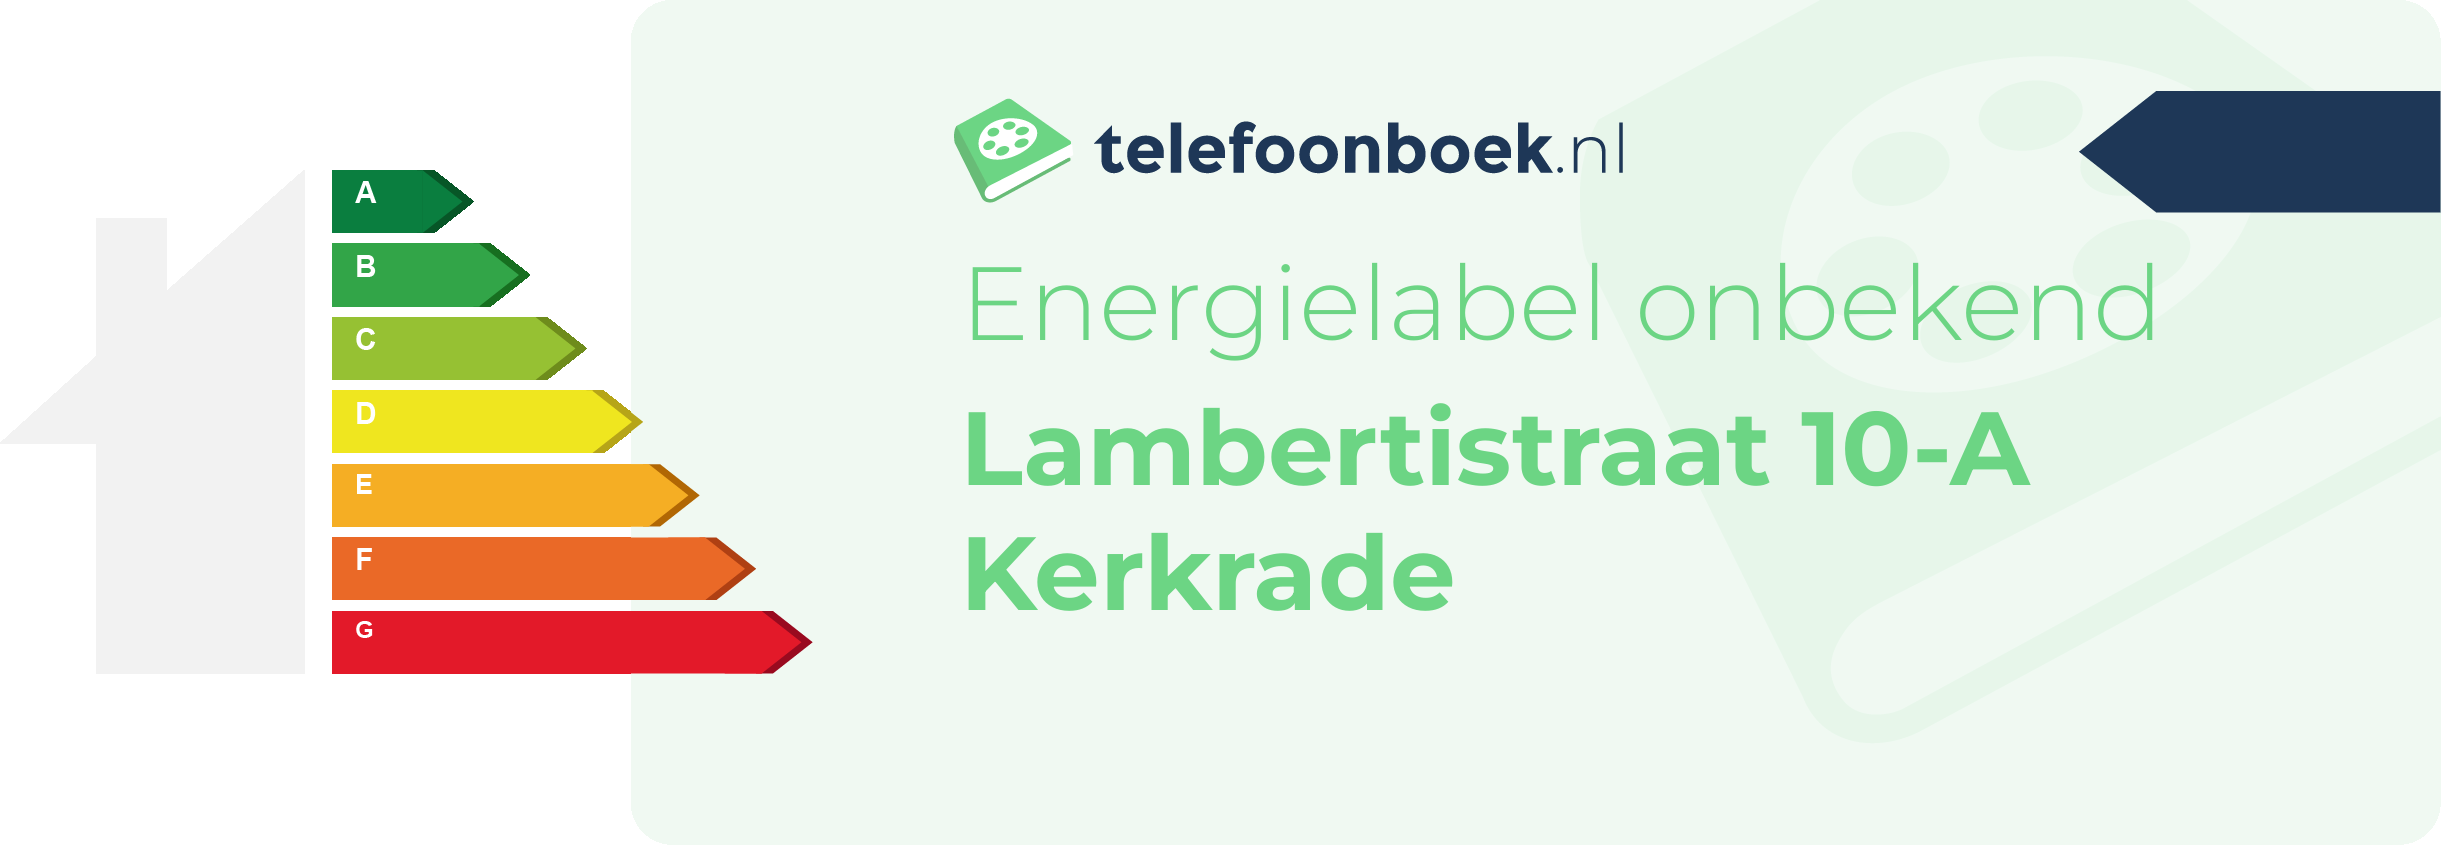 Energielabel Lambertistraat 10-A Kerkrade